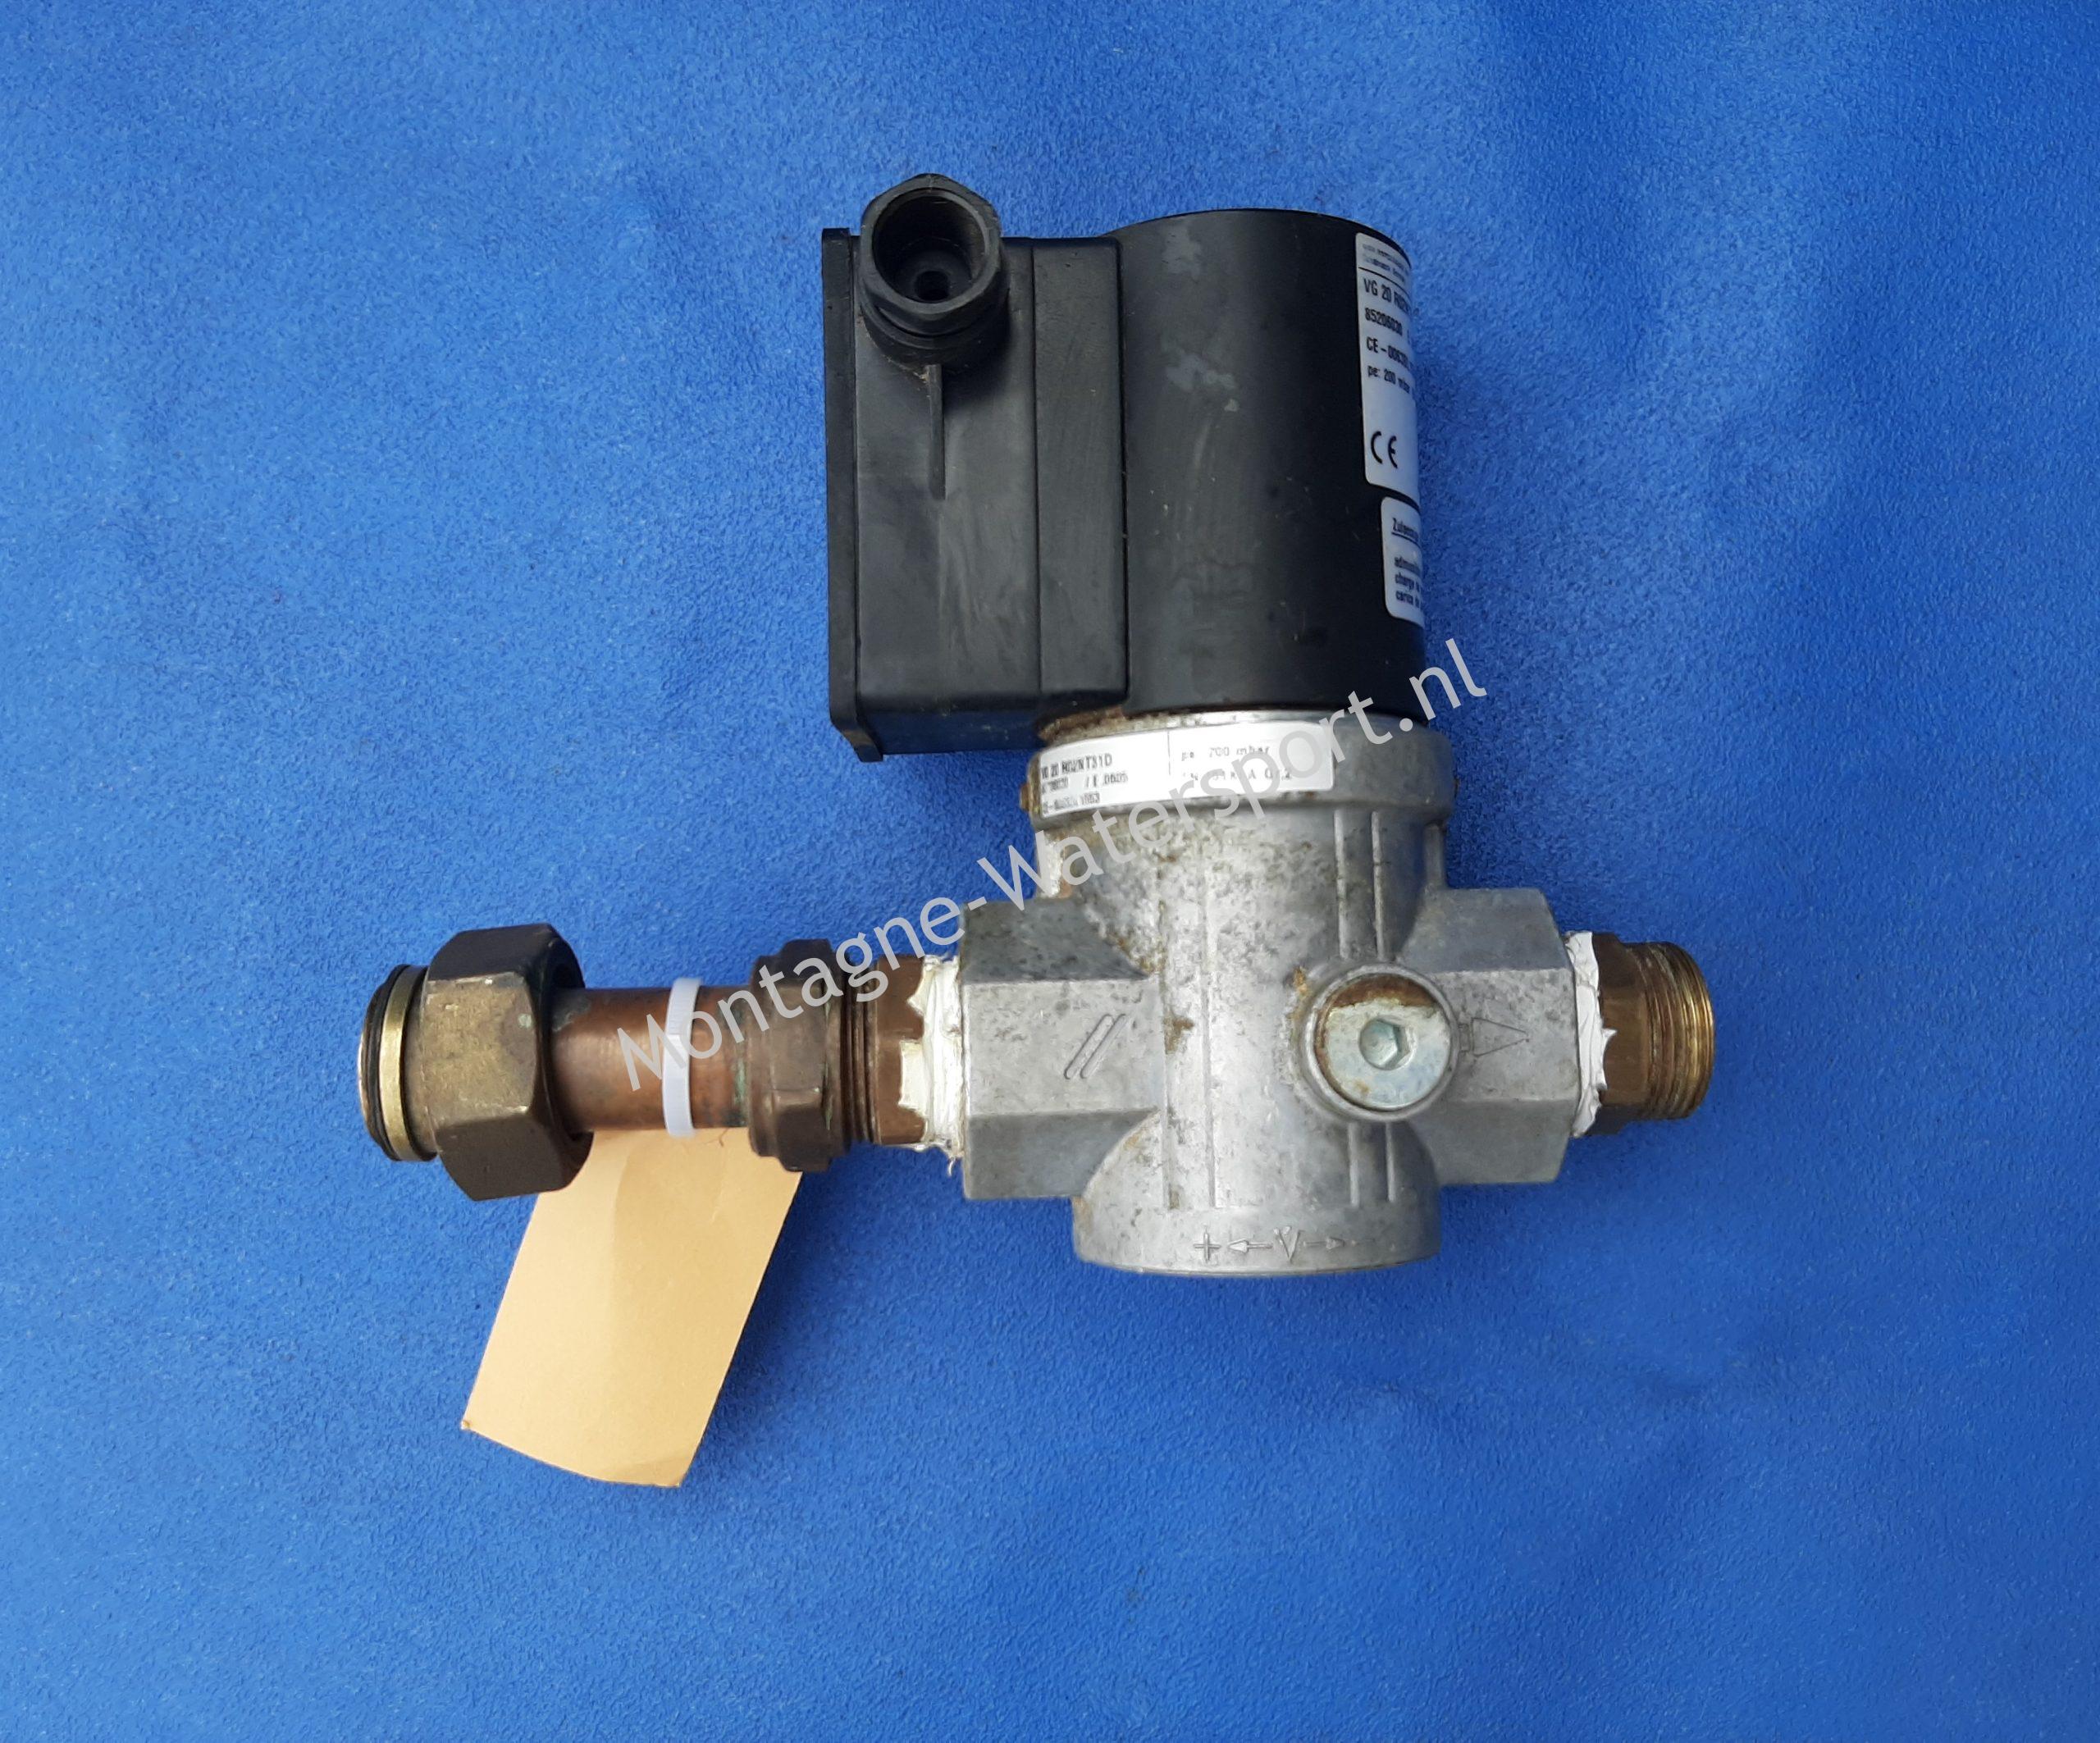 59100 Gasklep Kromschroeder VG 20 R02NT31D Solenoid valve